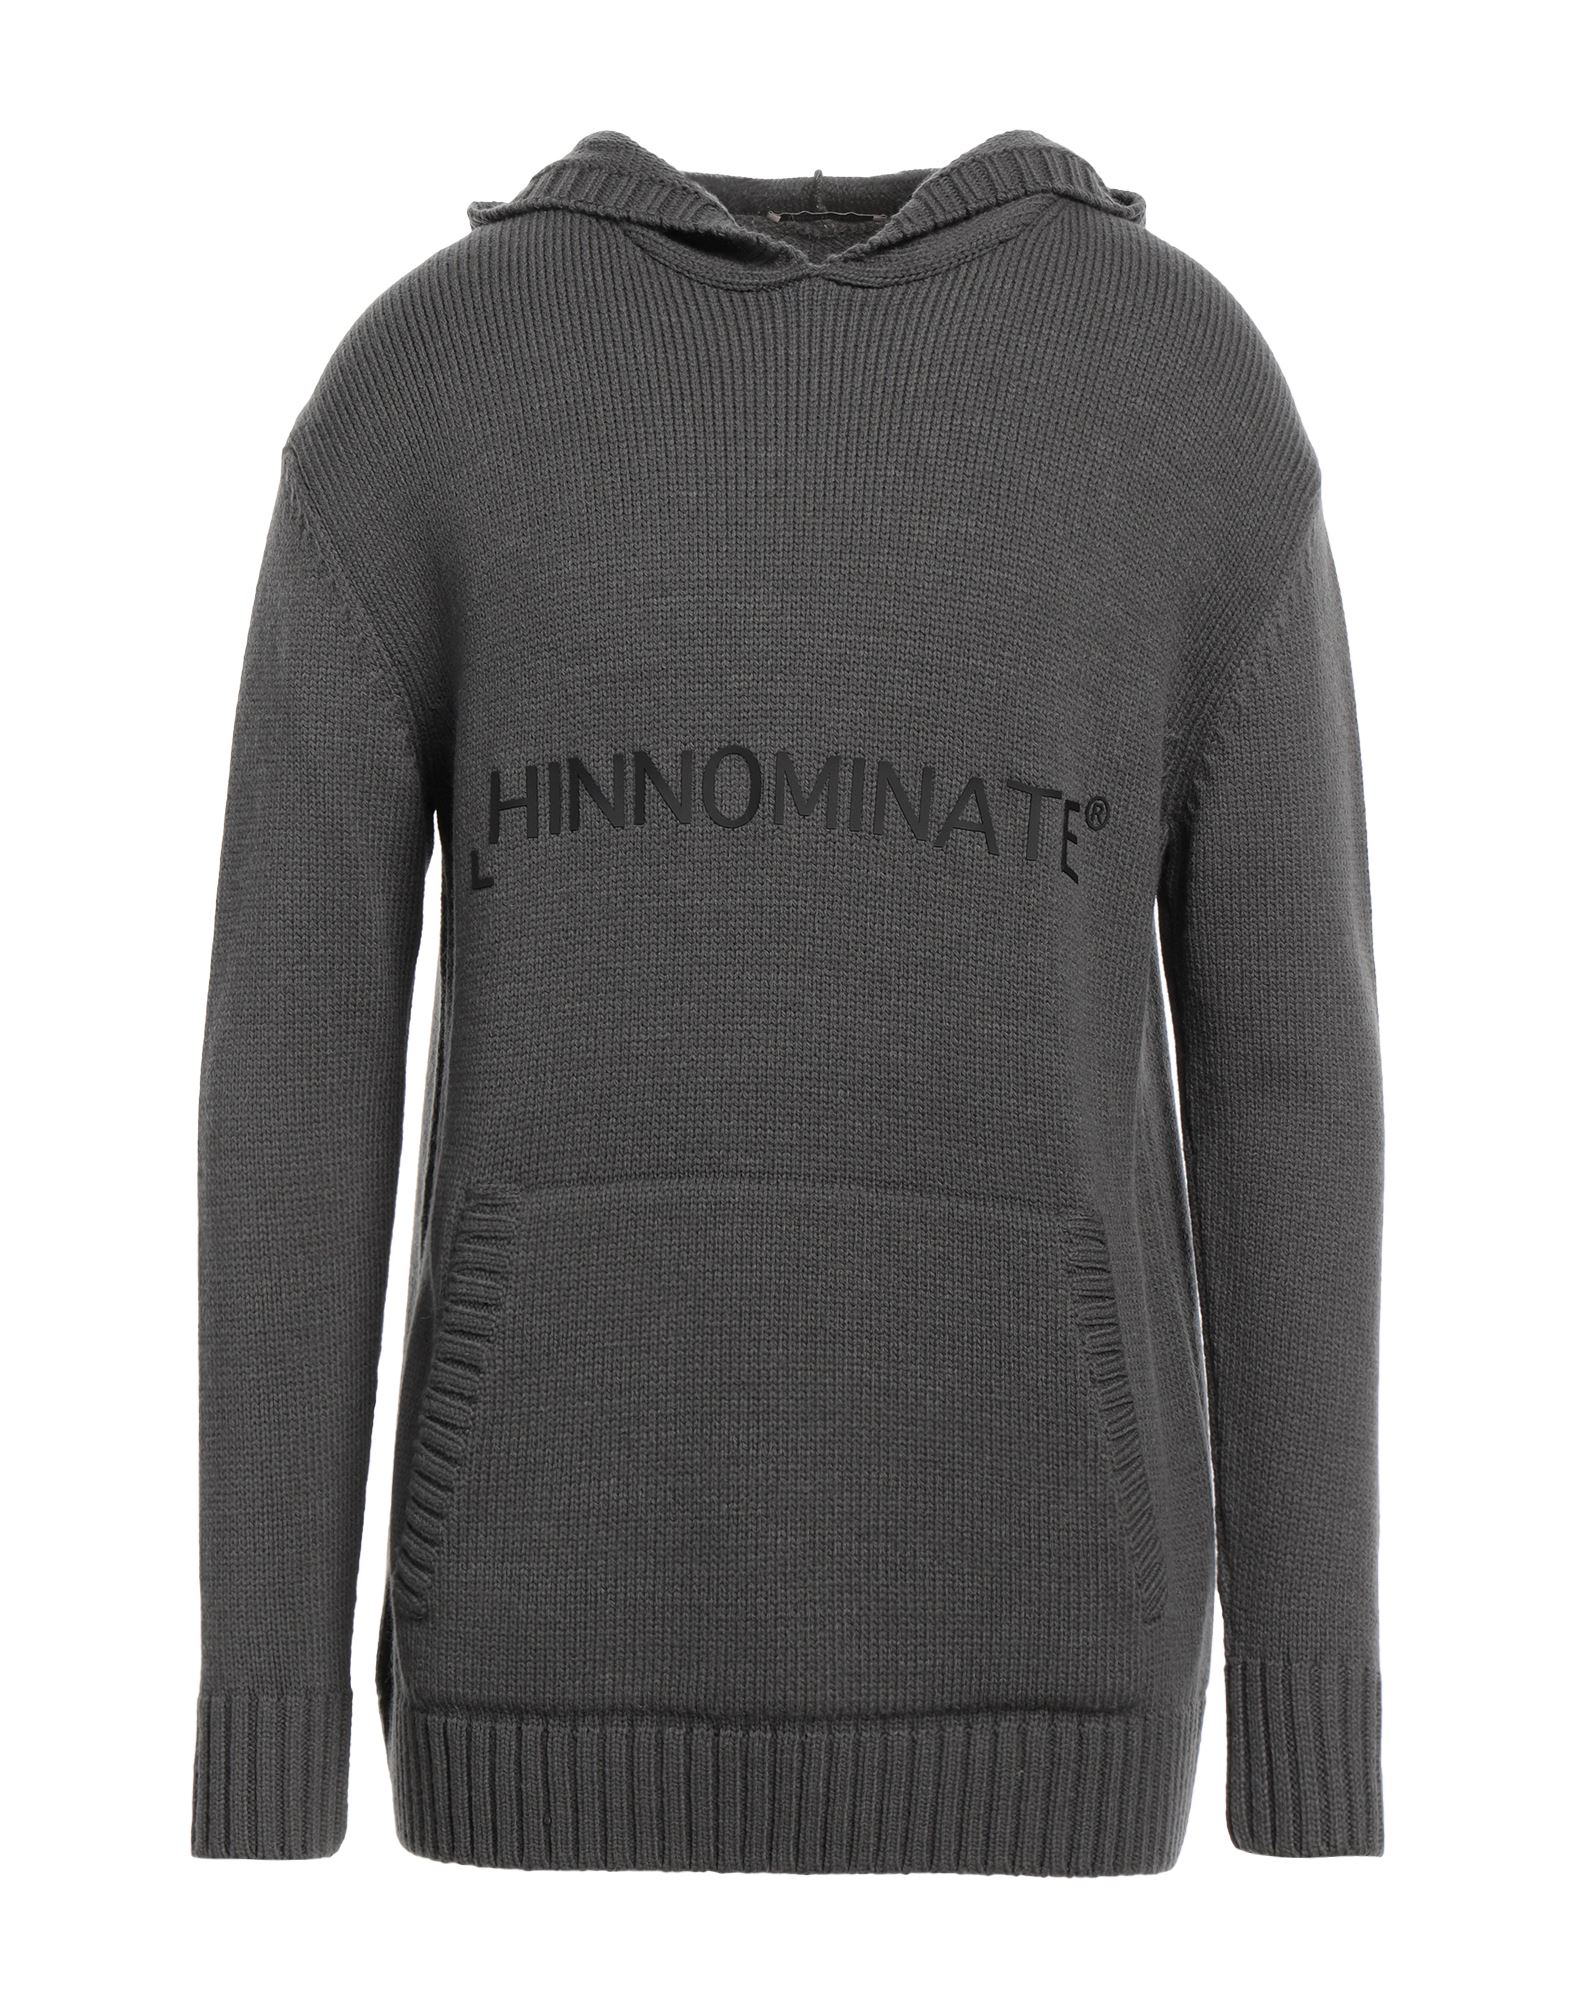 HINNOMINATE Pullover Herren Blei von HINNOMINATE